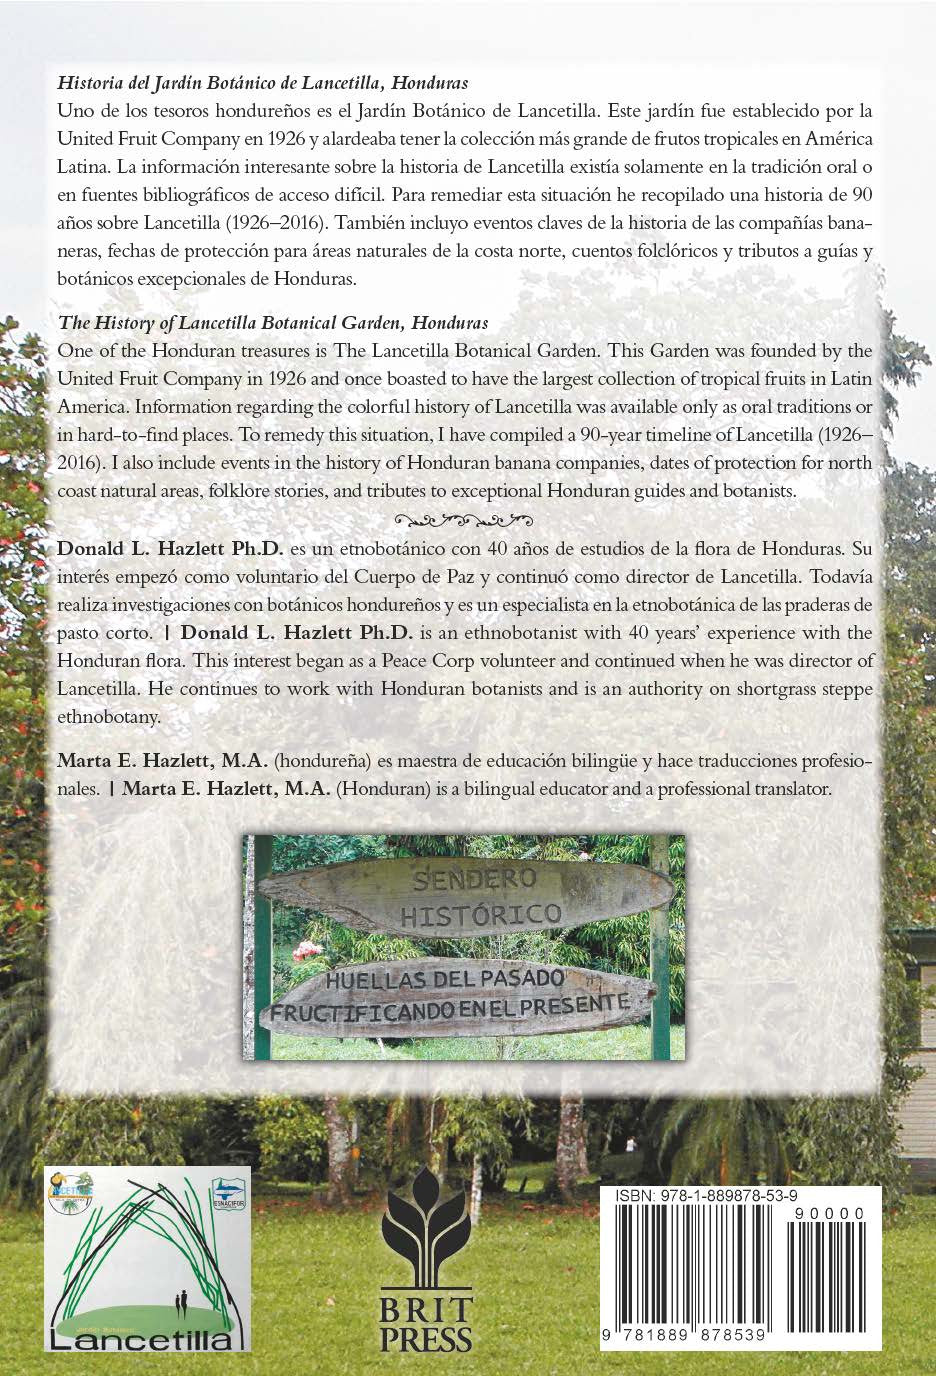 Historia del Jardín Botánico de Lancetilla, Honduras - The  History of Lancetilla Botanical Garden, Honduras